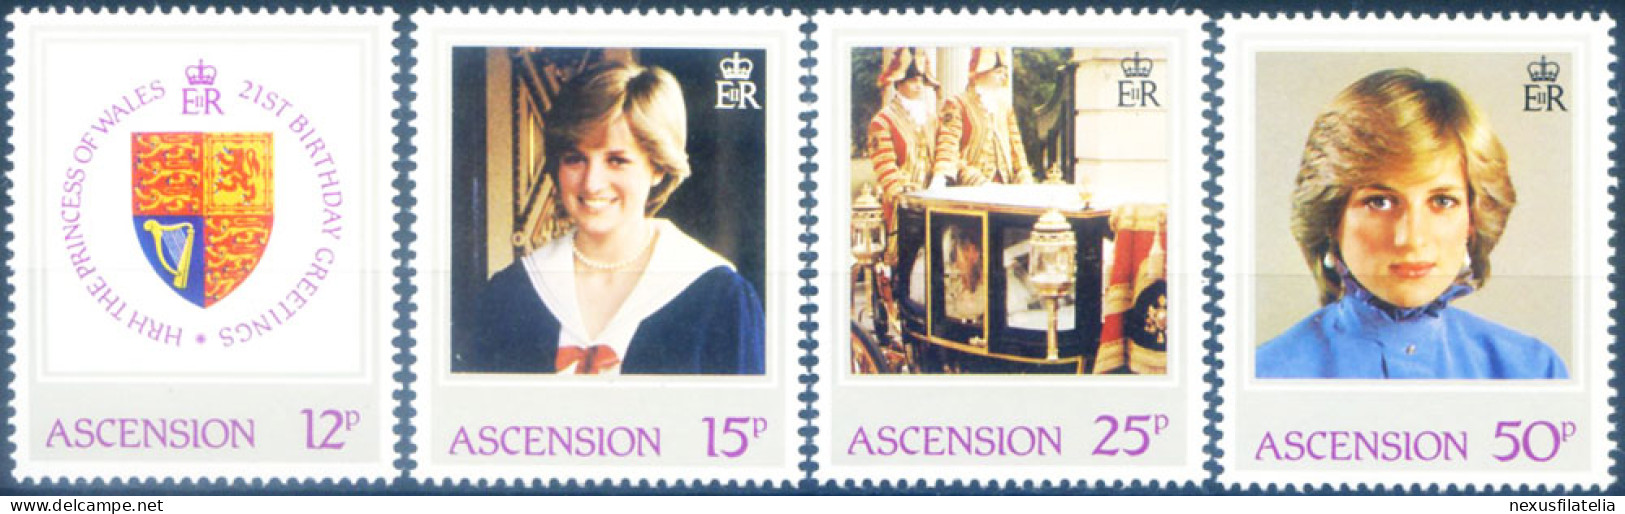 Famiglia Reale 1982. - Ascension